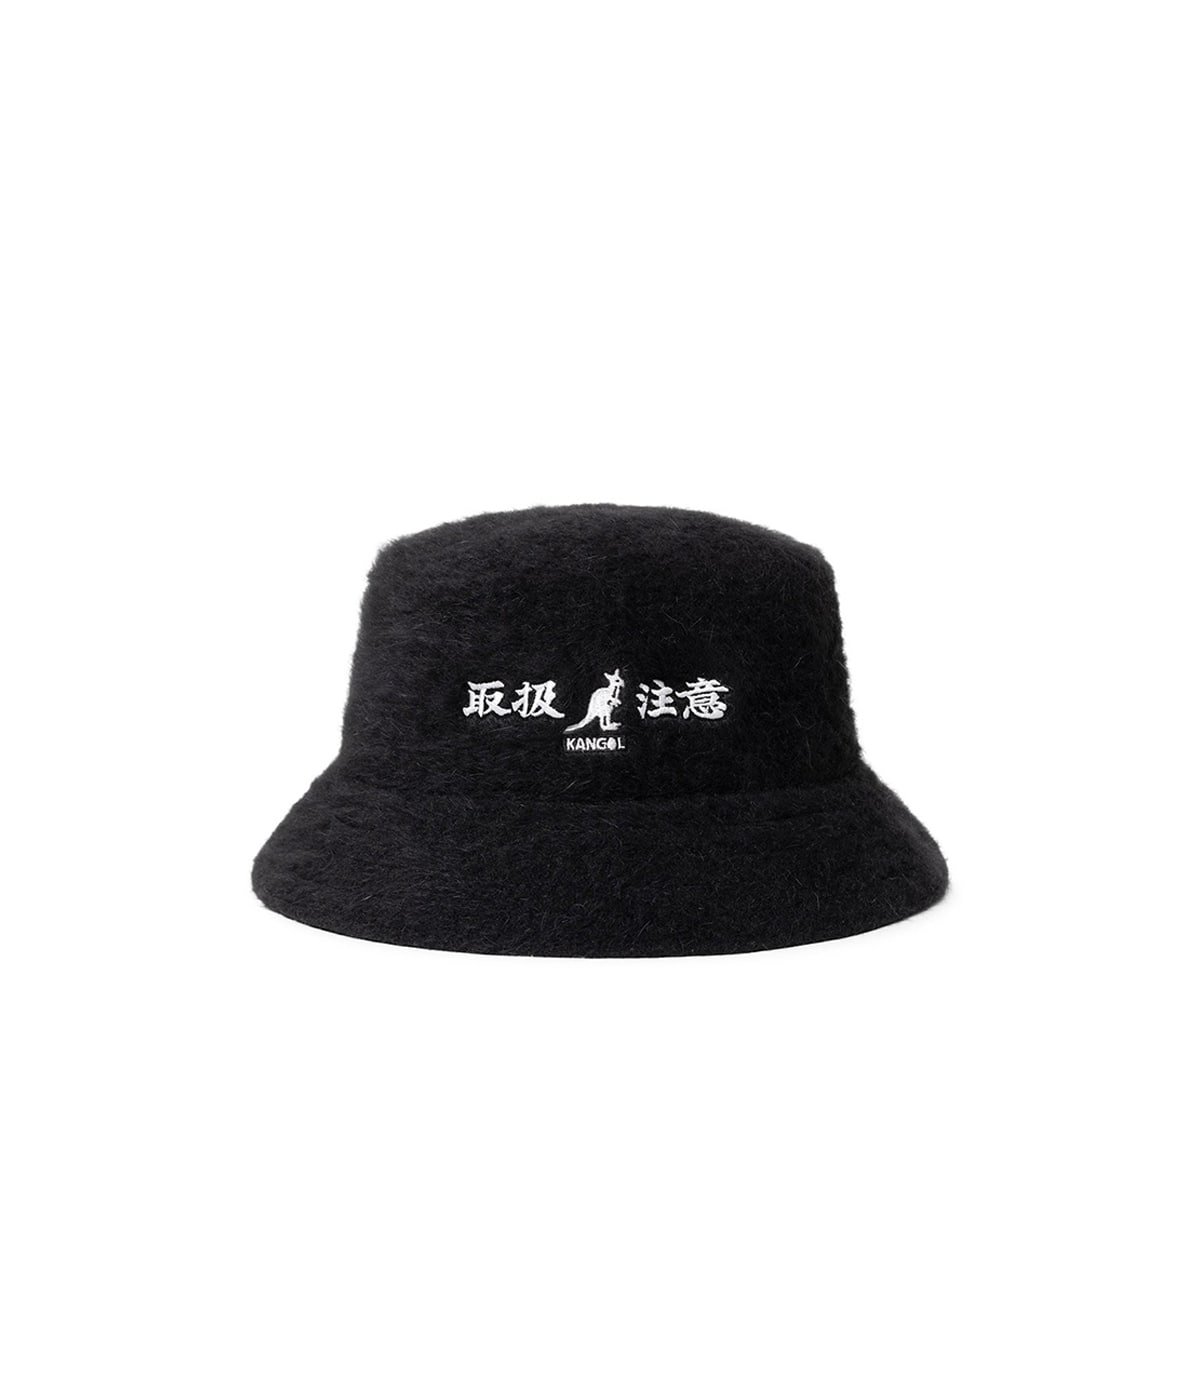 HWC KANGOL BUCKET HAT | BlackEyePatch(ブラックアイパッチ) / 帽子 